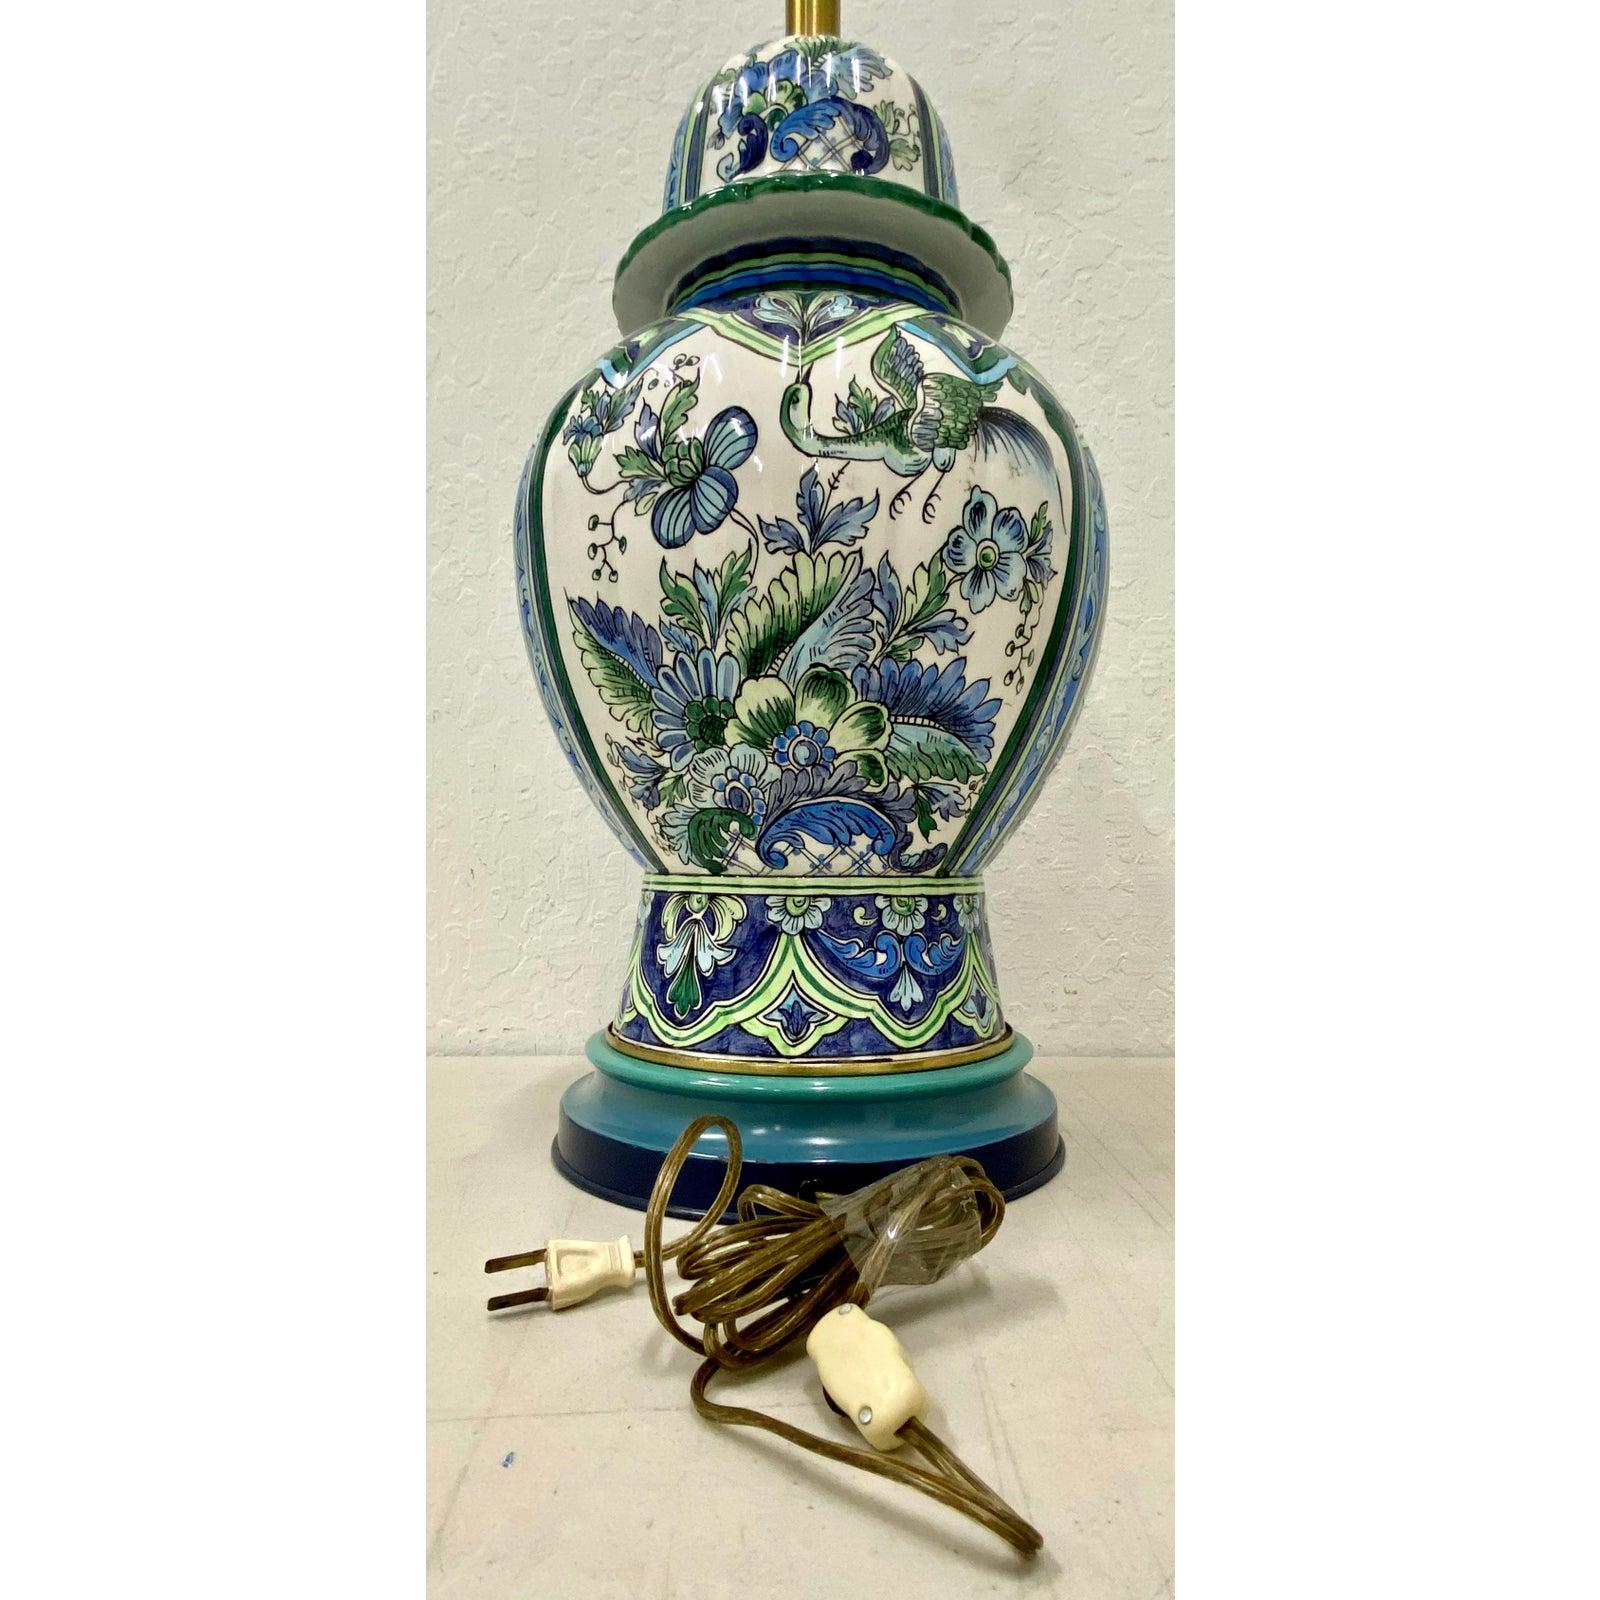 Vintage handbemalte Keramik-Tischlampe mit Original-Schirm von Marbro, um 1970

Maße: 11